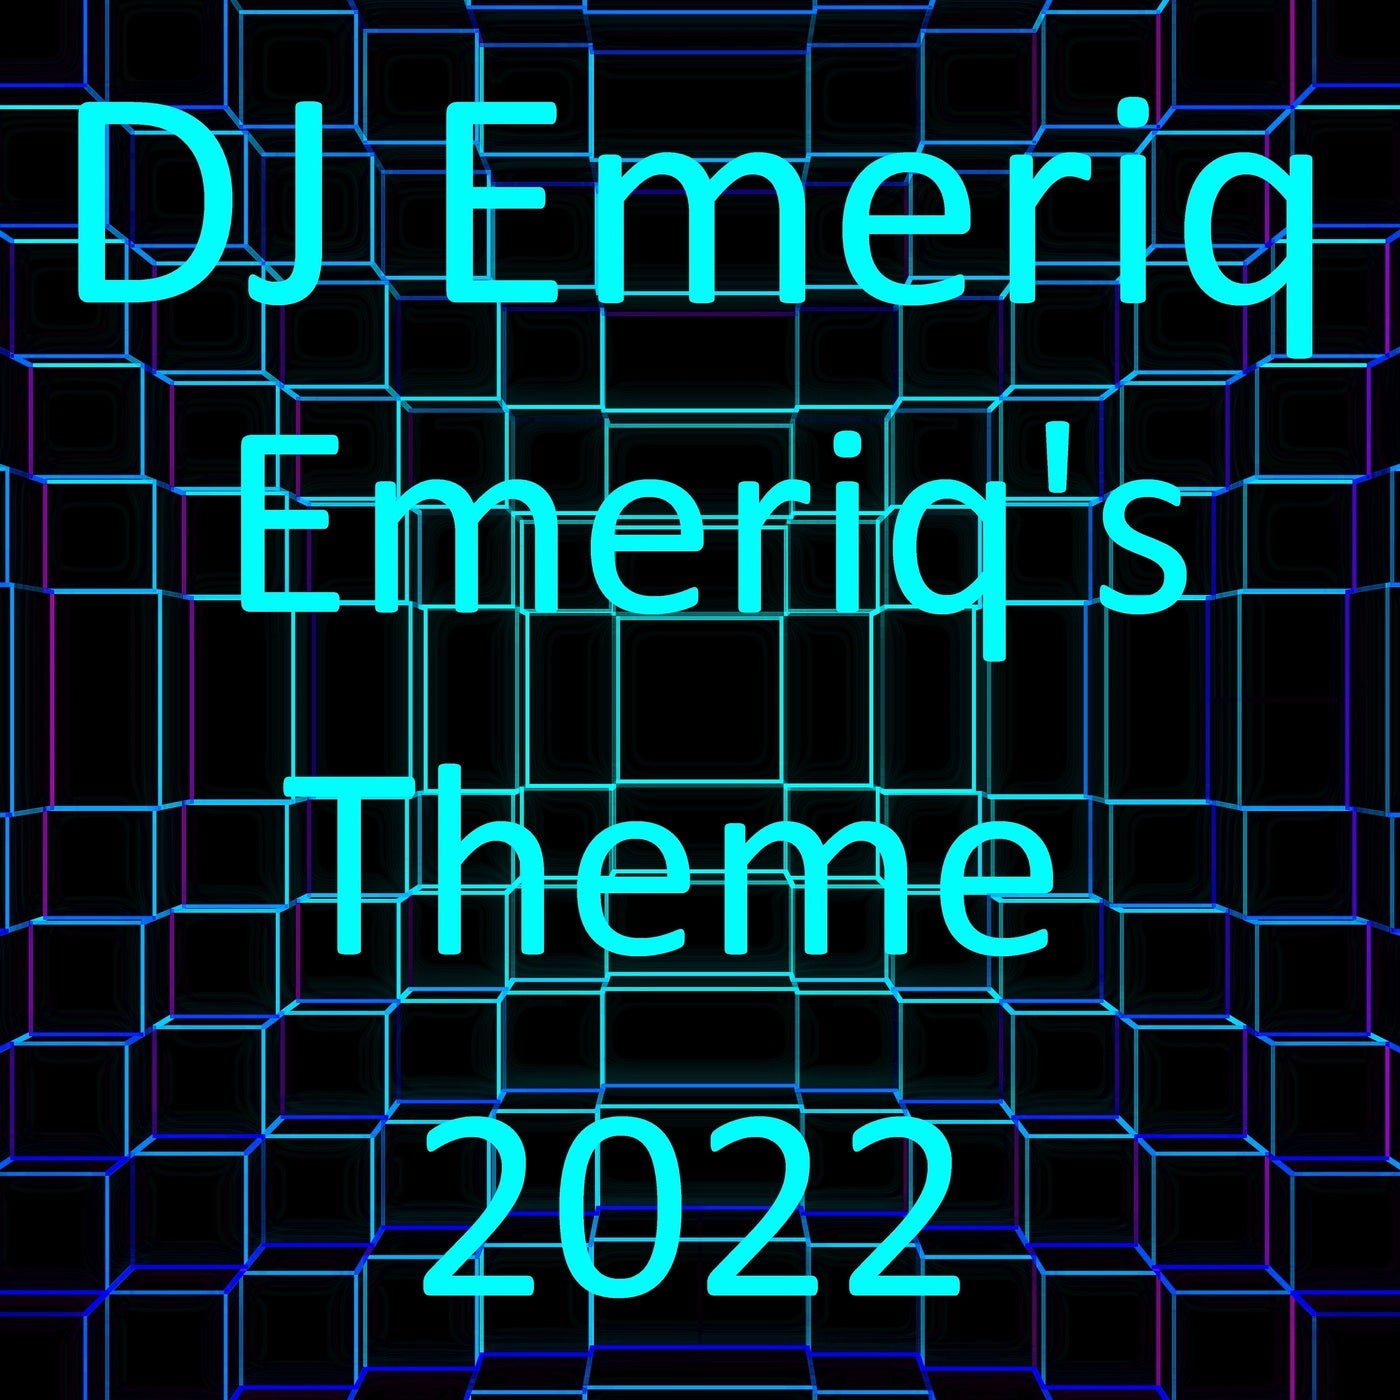 Emeriq's Theme 2022